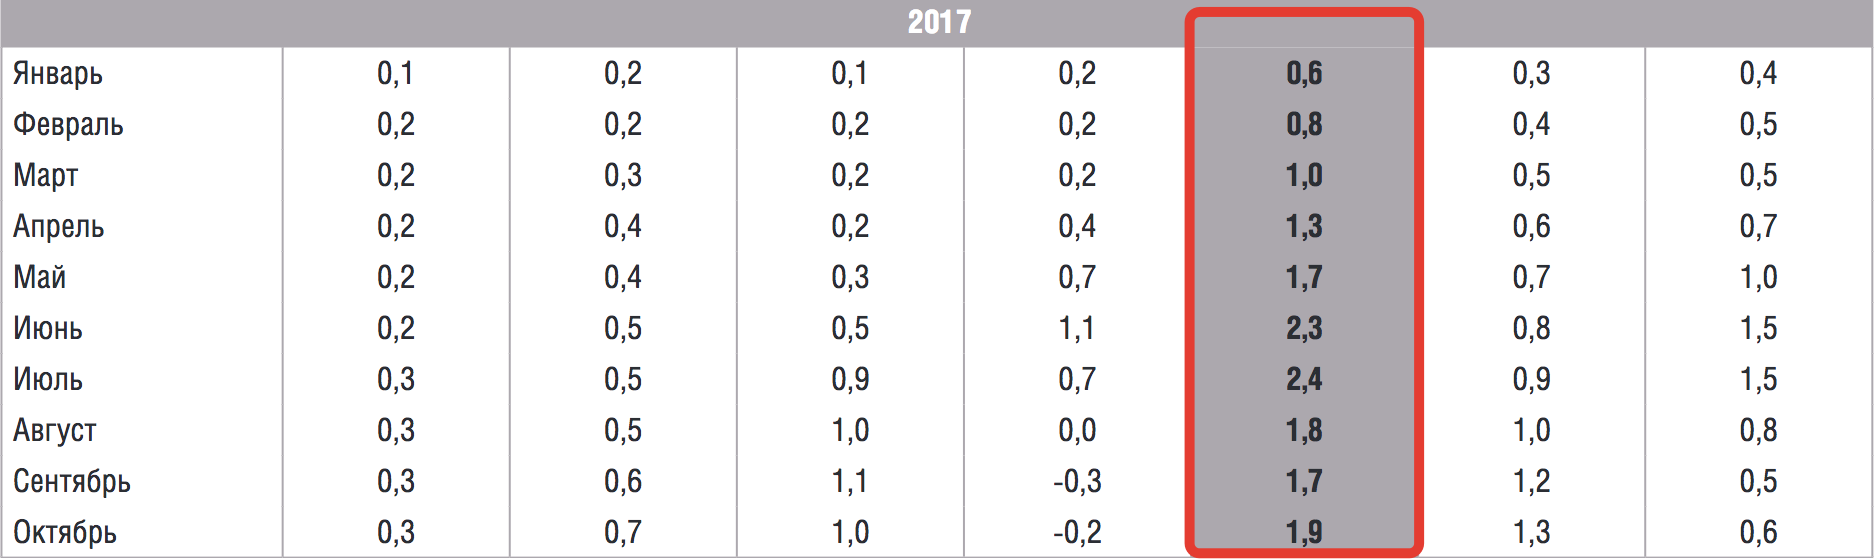 Среднемесячная инфляция в 2017 году в России по данным ЦБ